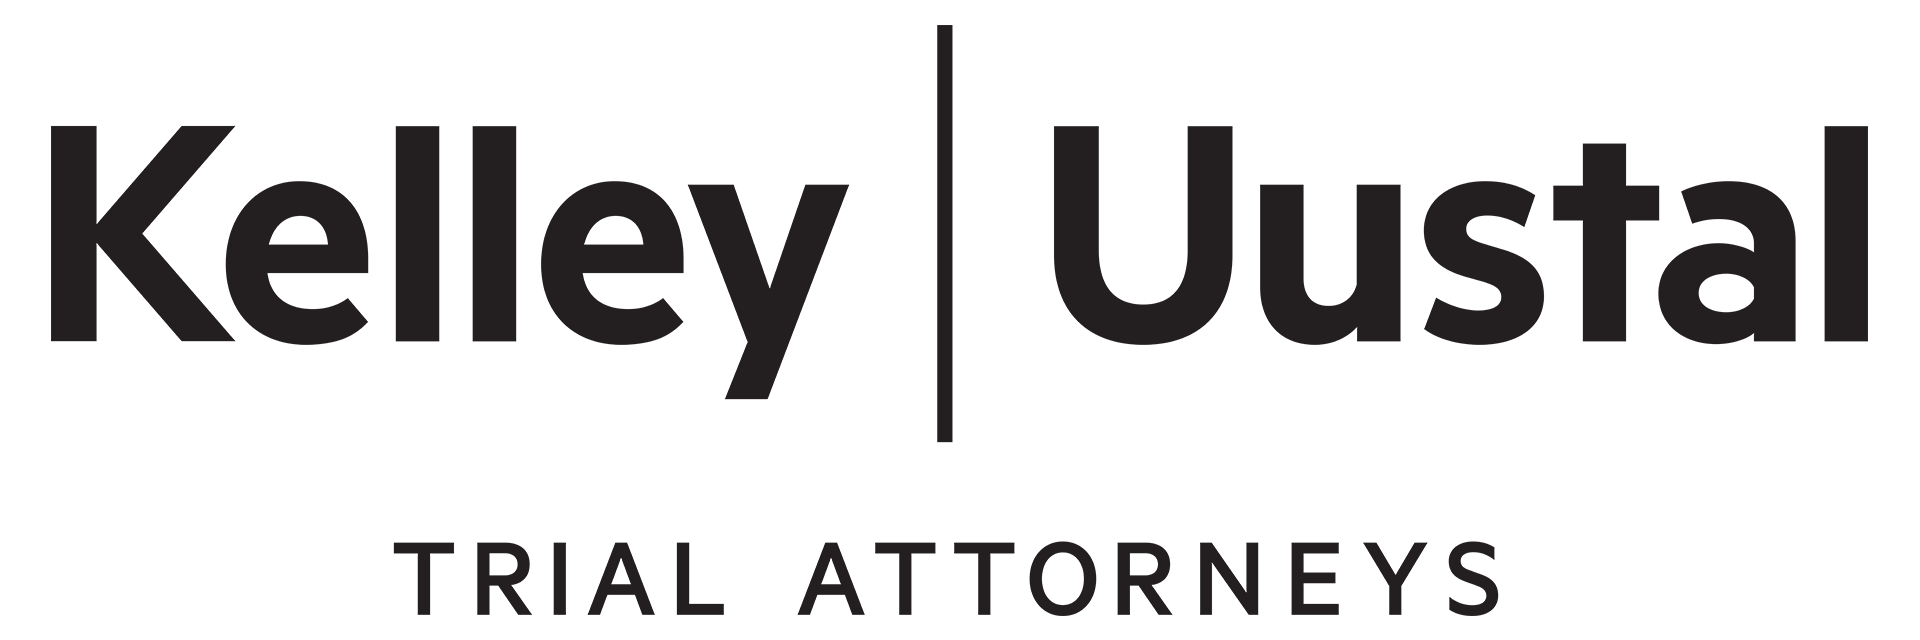 Kelley | Uustal Company Logo